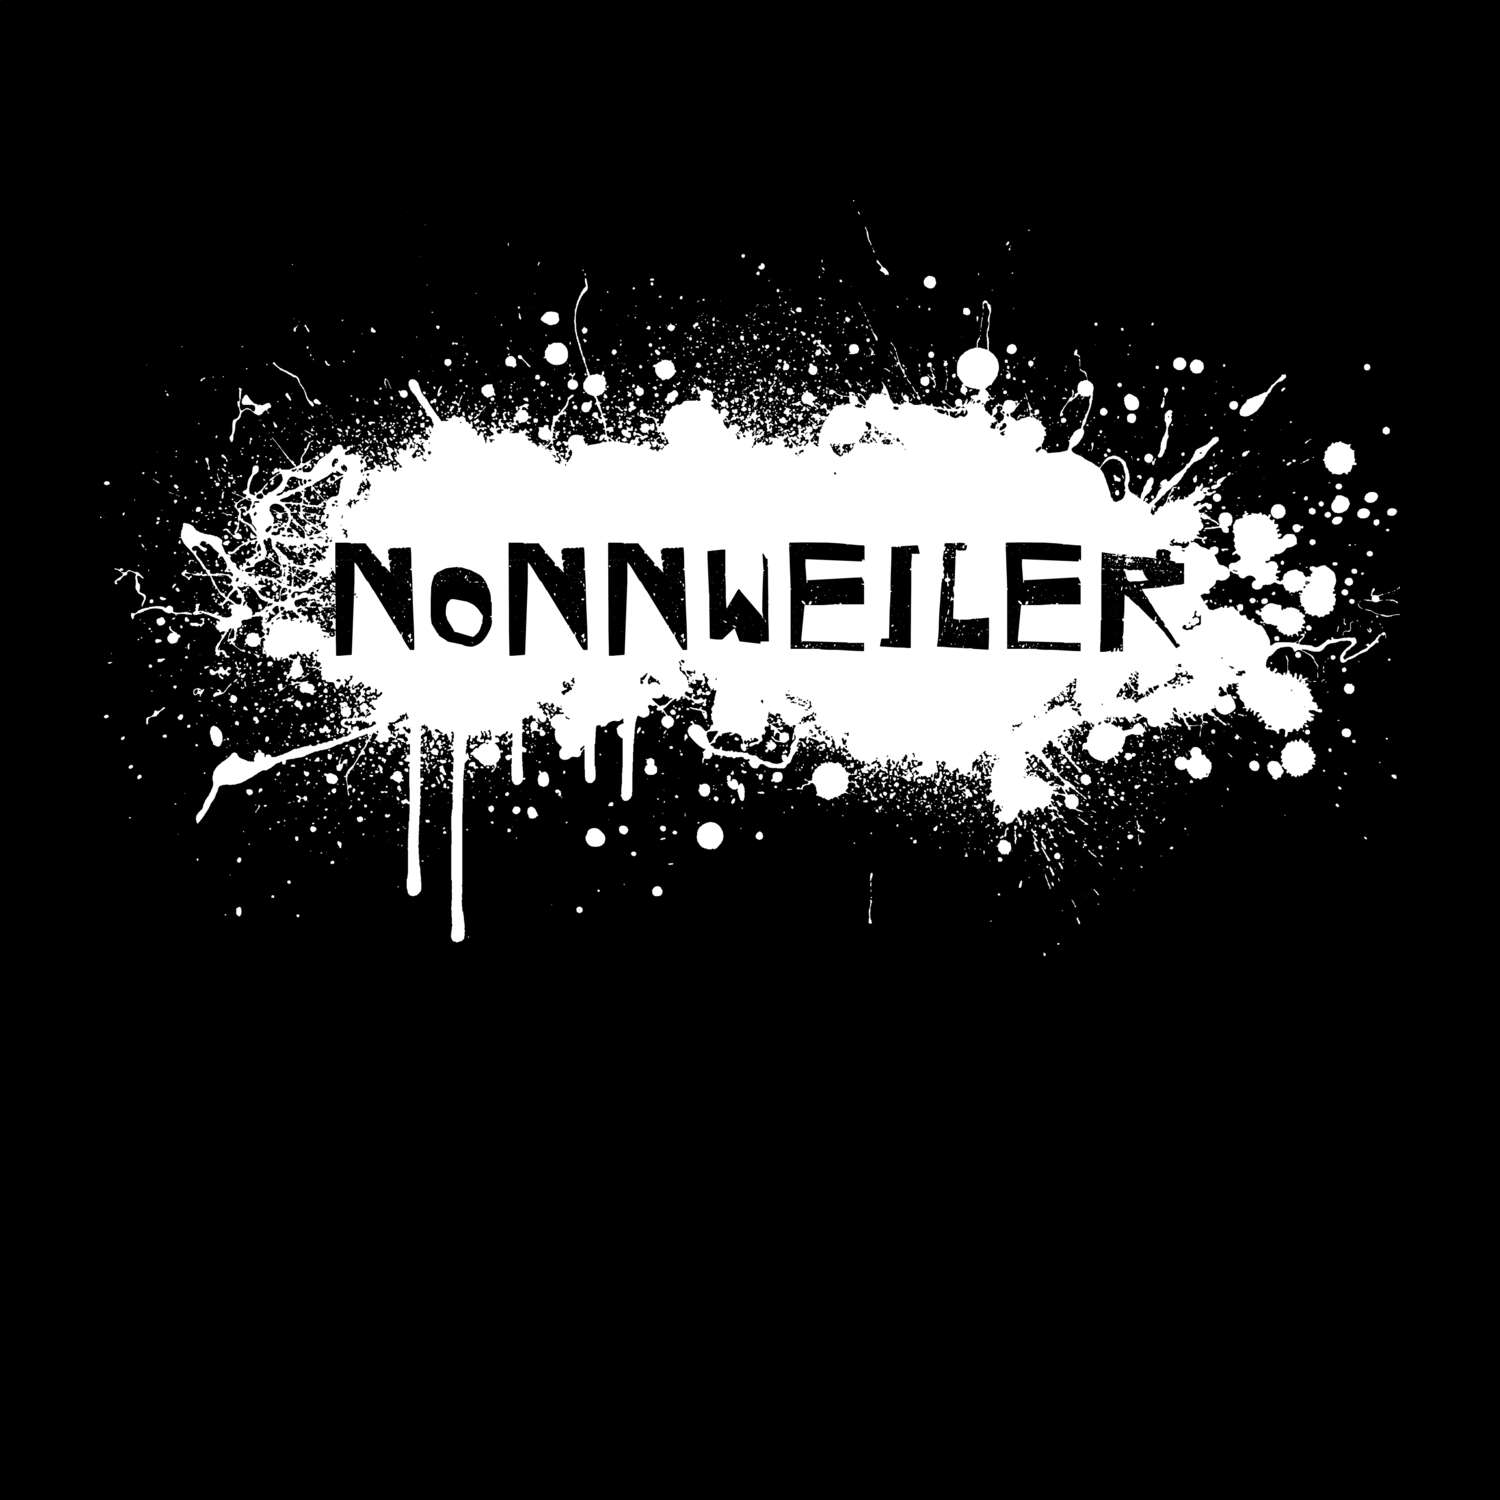 Nonnweiler T-Shirt »Paint Splash Punk«